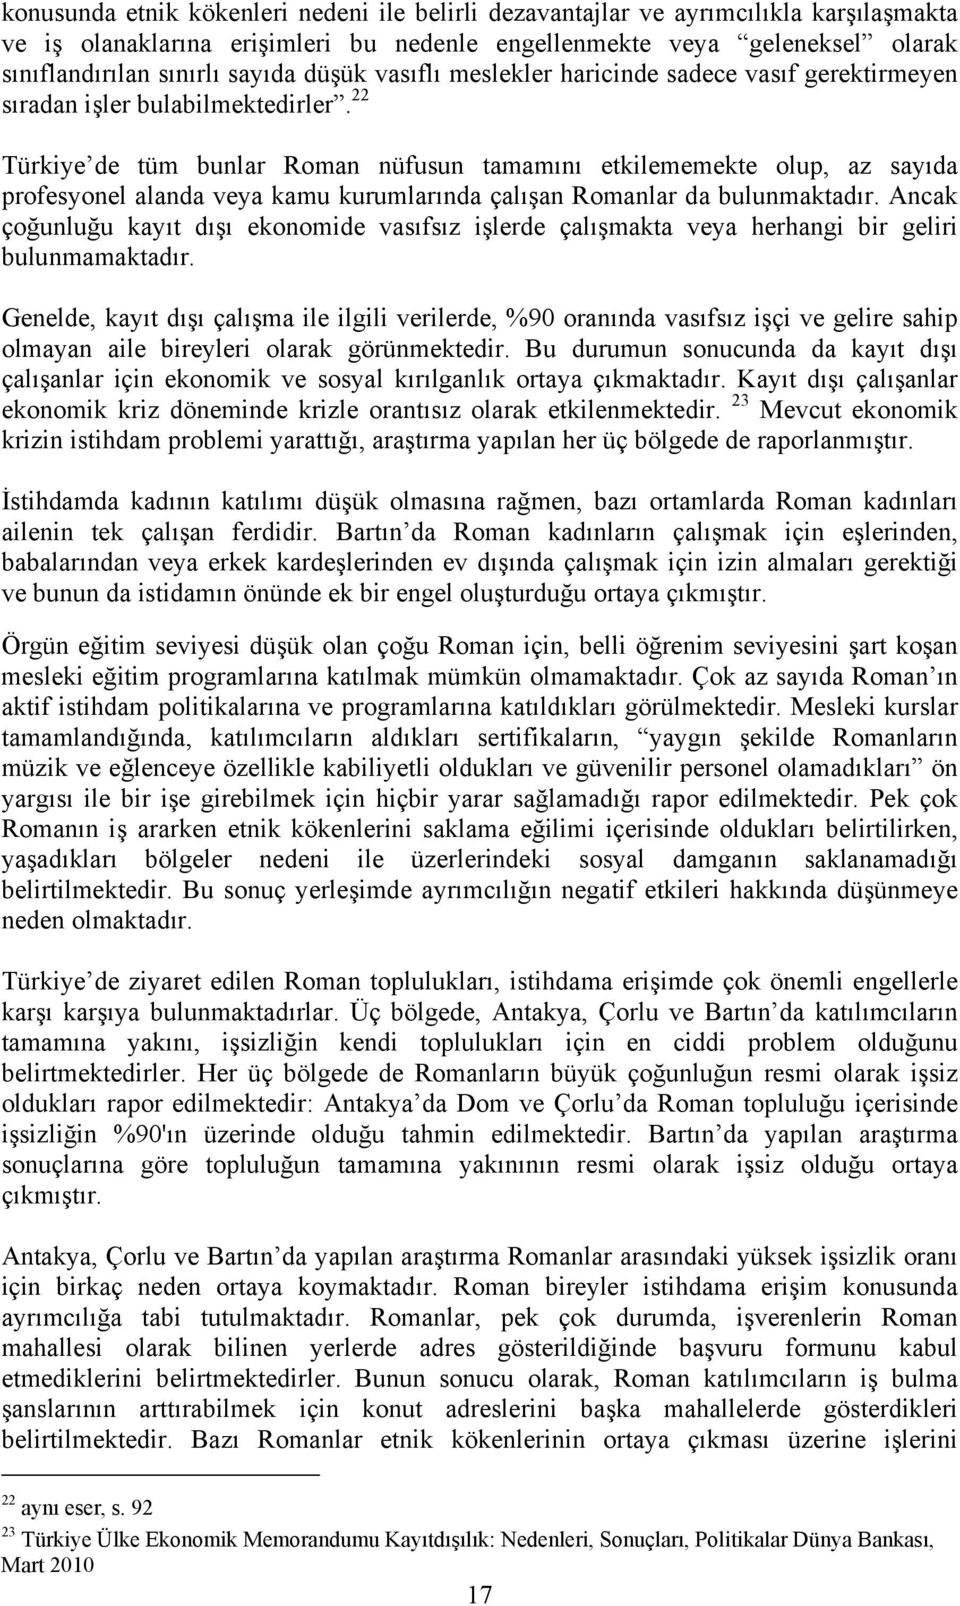 22 Türkiye de tüm bunlar Roman nüfusun tamamını etkilememekte olup, az sayıda profesyonel alanda veya kamu kurumlarında çalışan Romanlar da bulunmaktadır.